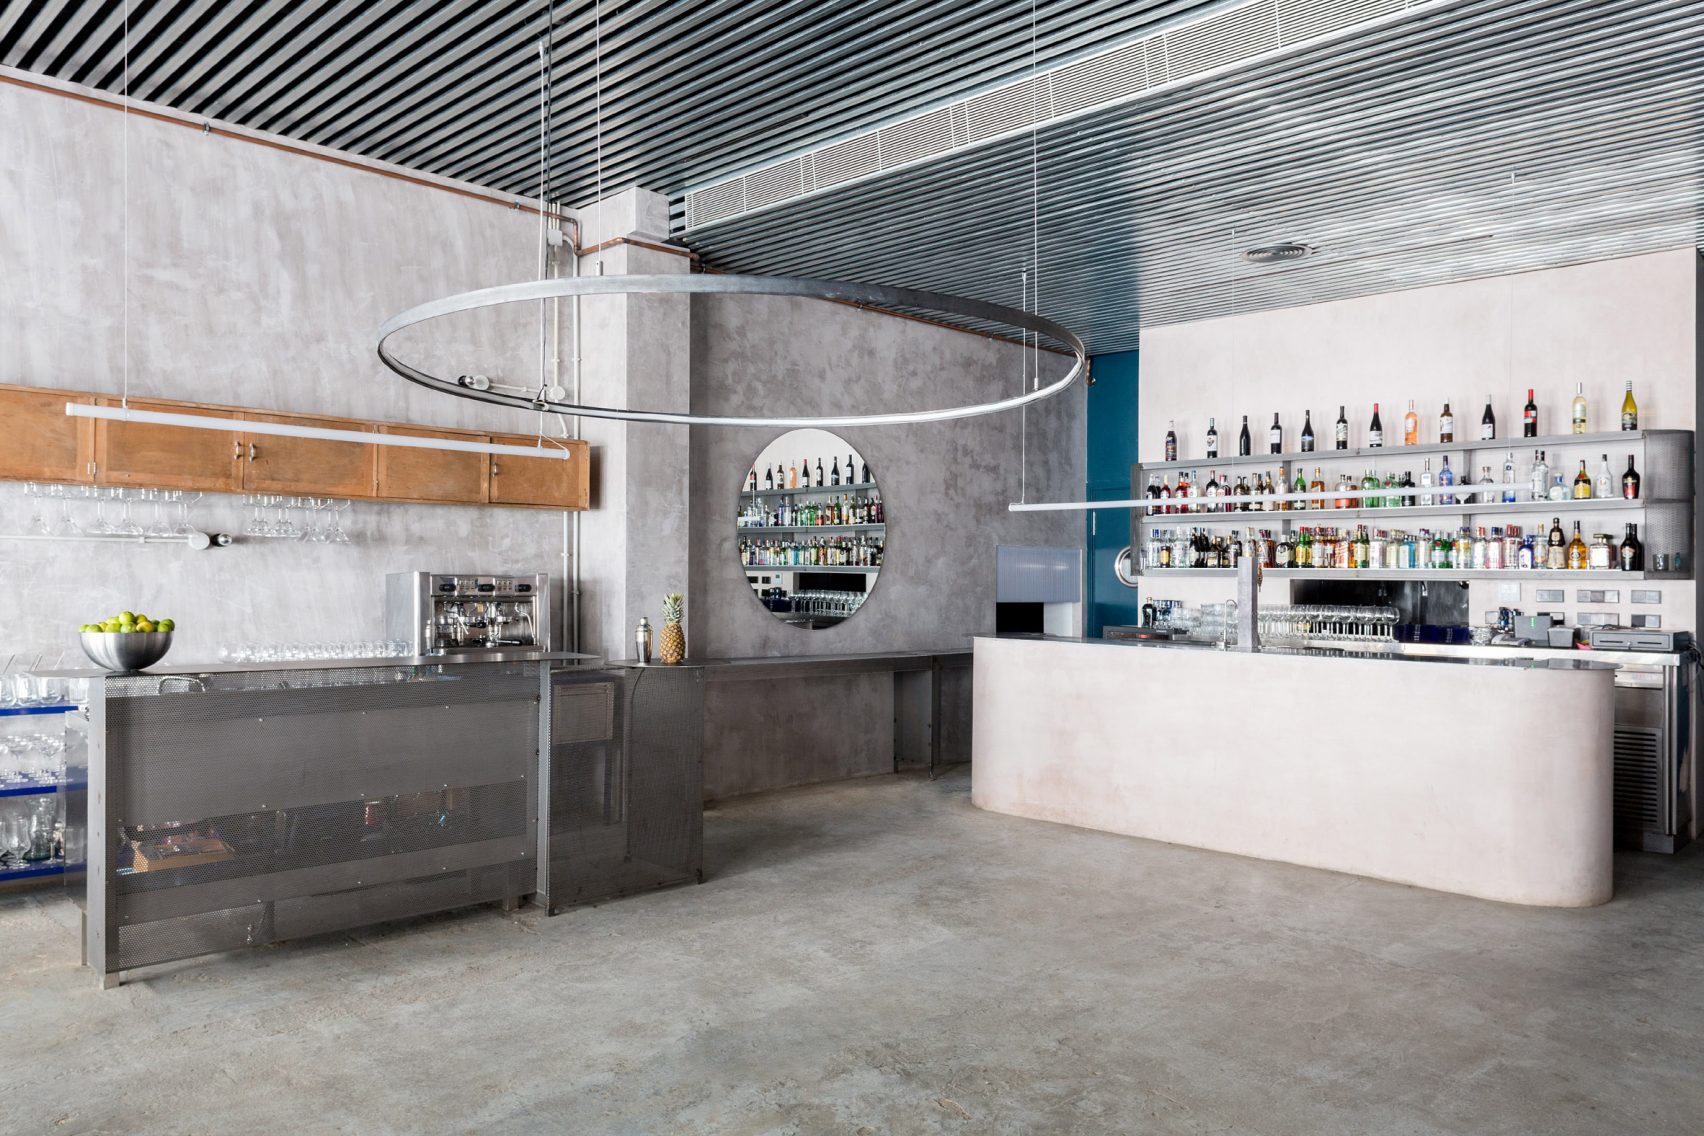 Мебель пастельных тонов контрастирует с бетонными стенами в ресторане «Casaplata» в Севильи